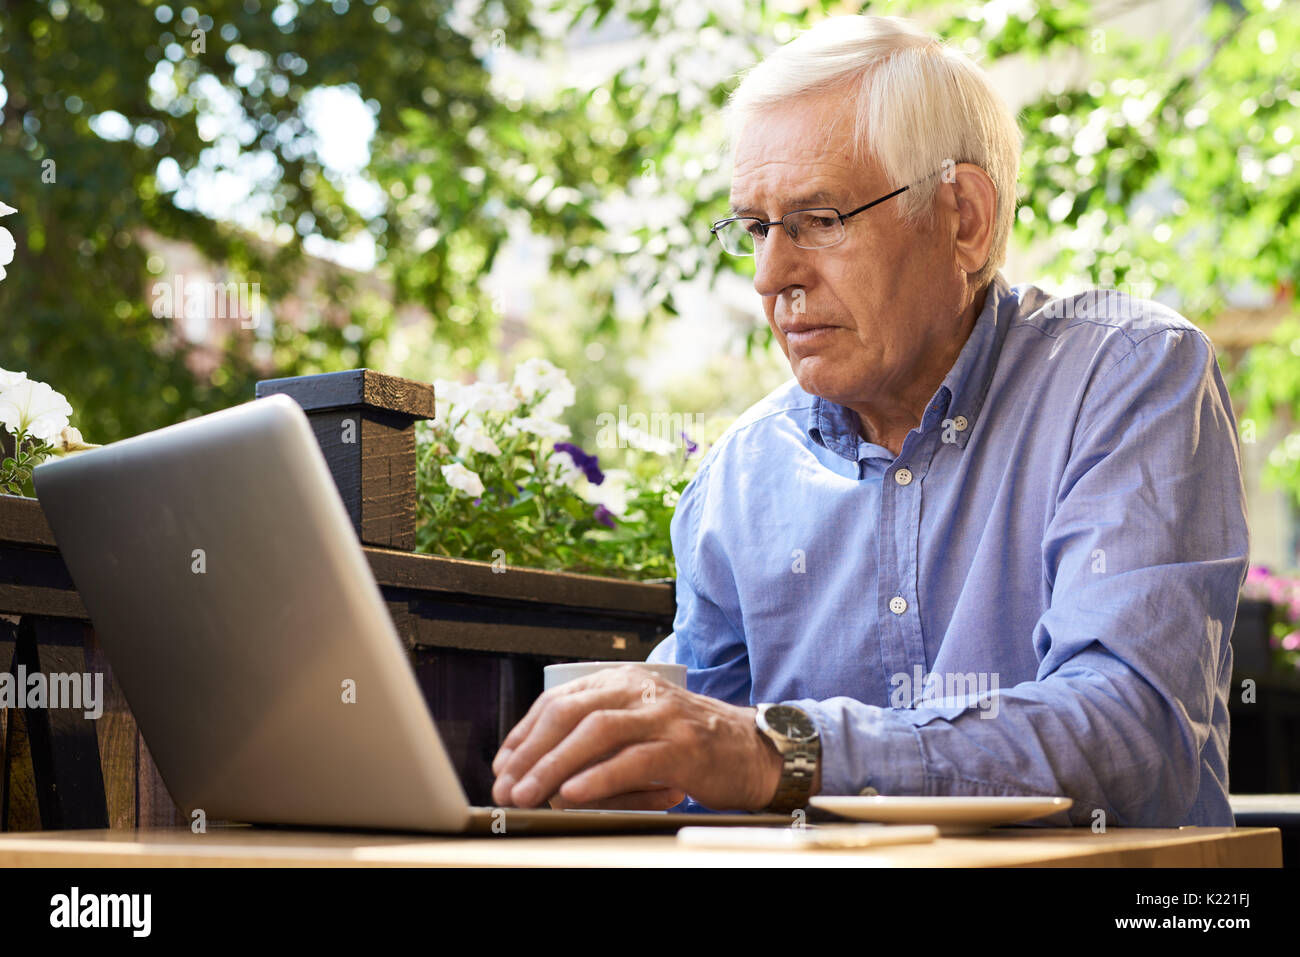 Modern Senior Man Using Laptop in Cafe Stock Photo